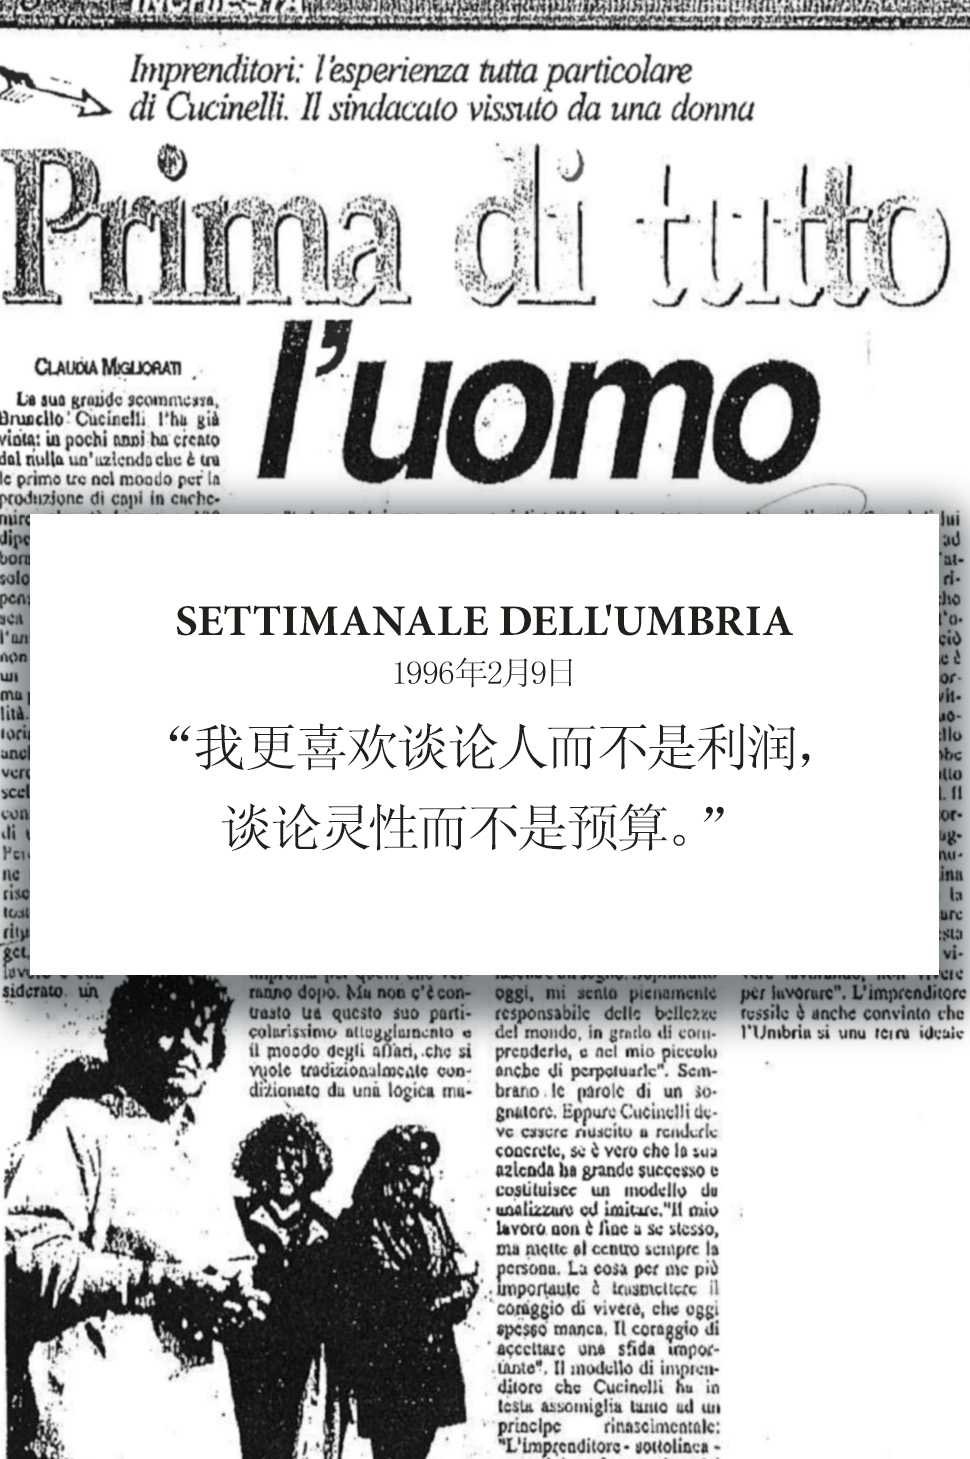 1996 Settimanale dell'Umbria